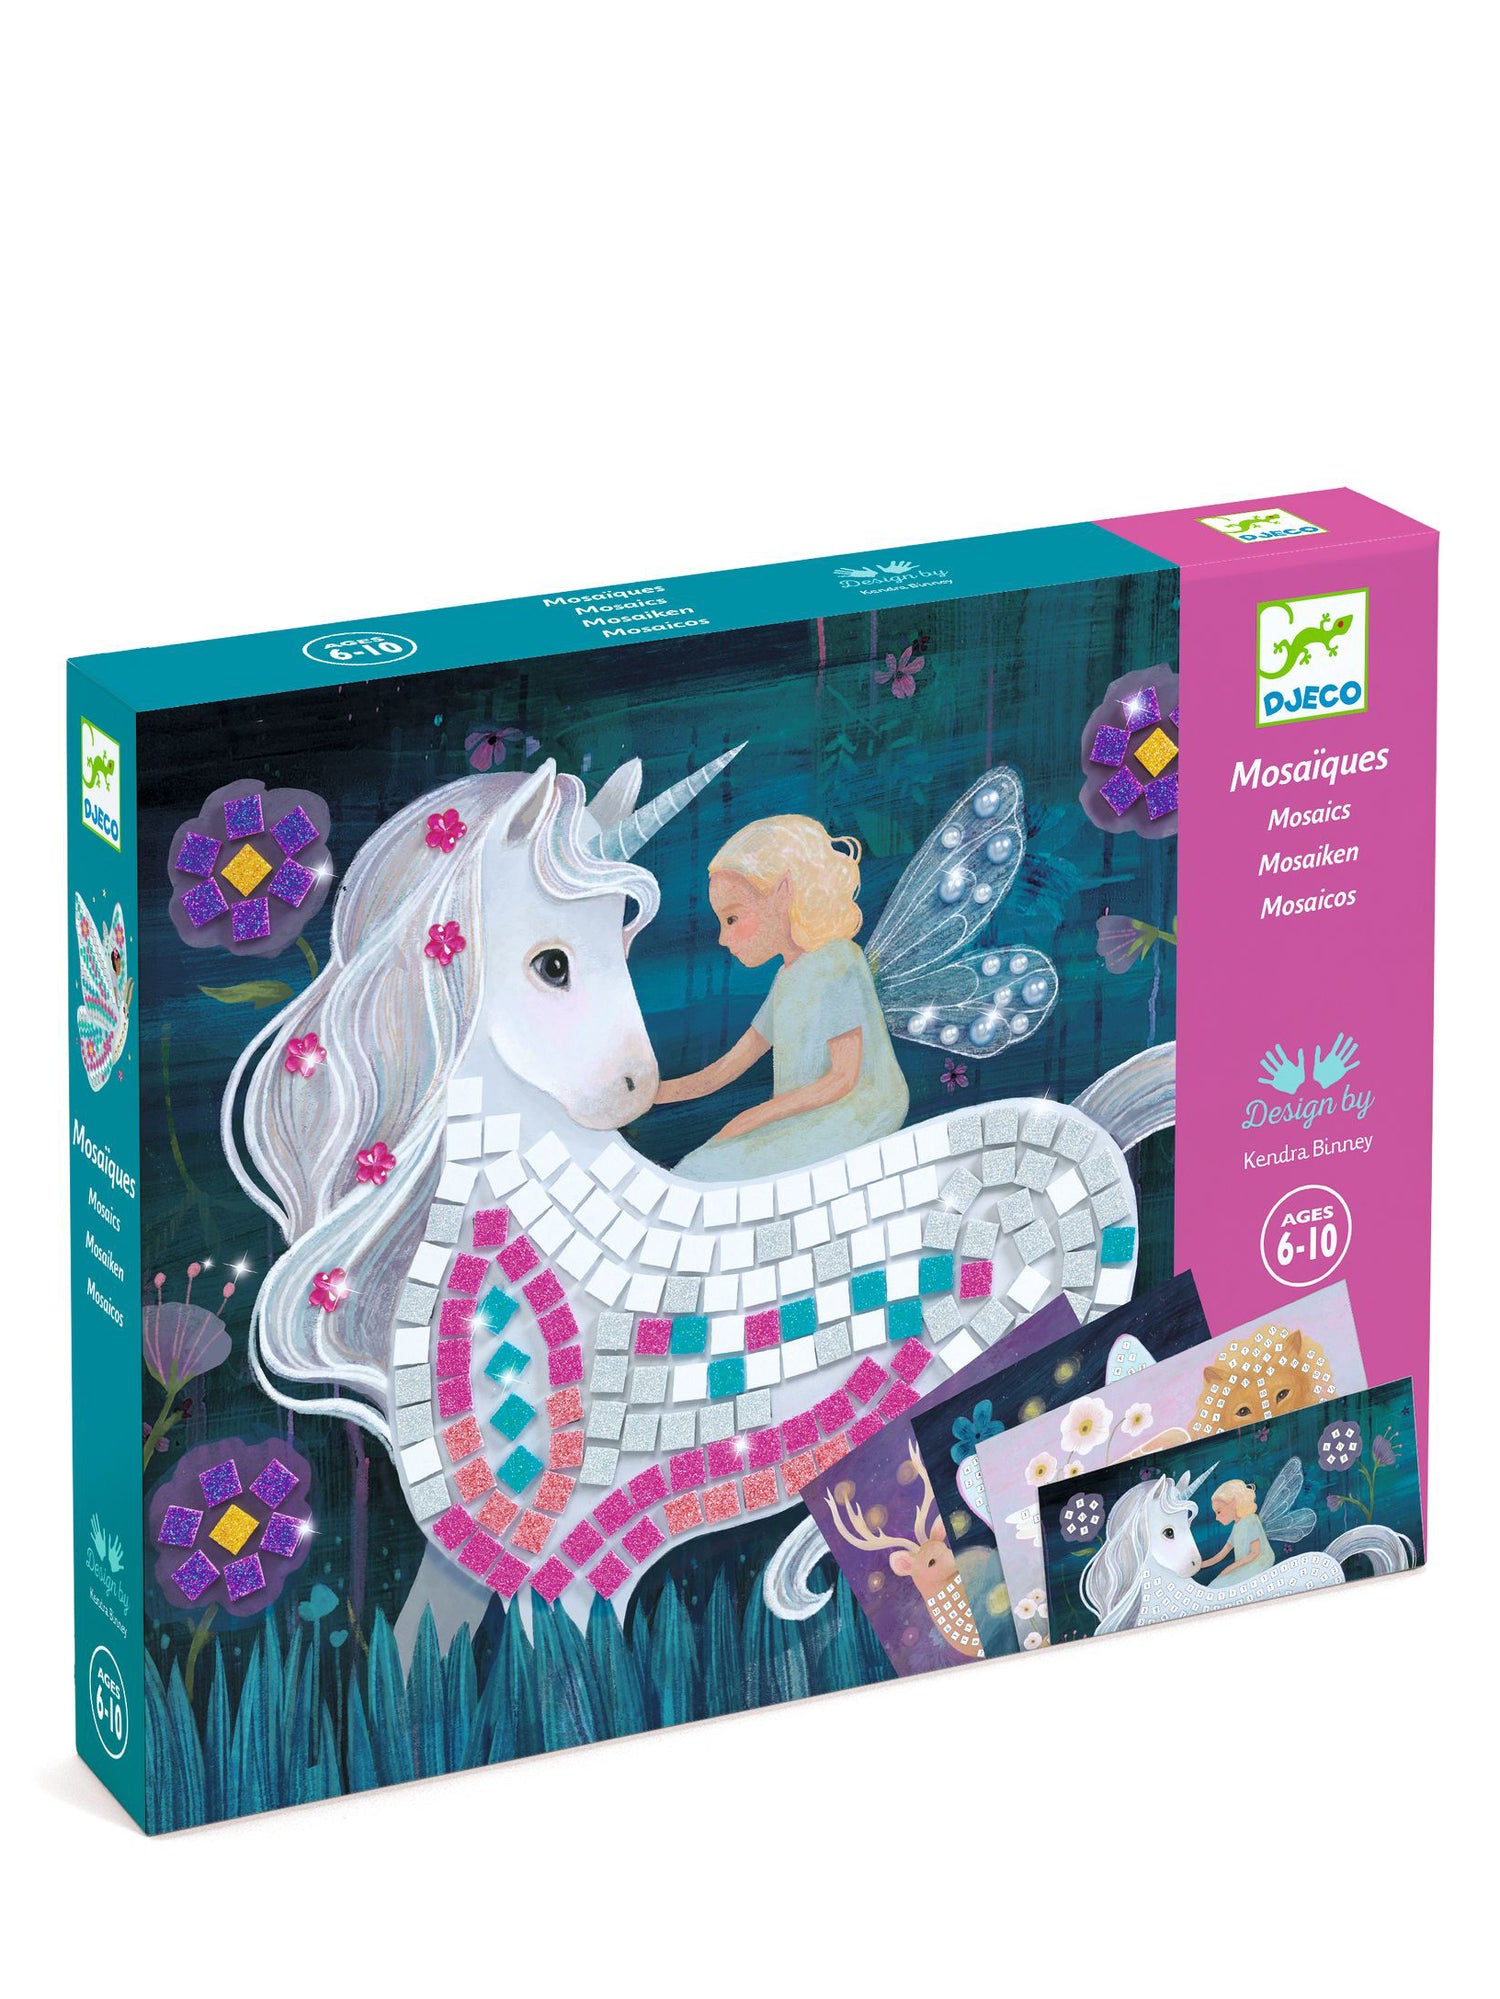 Unicorn Mosaic Kit - The enchanted world